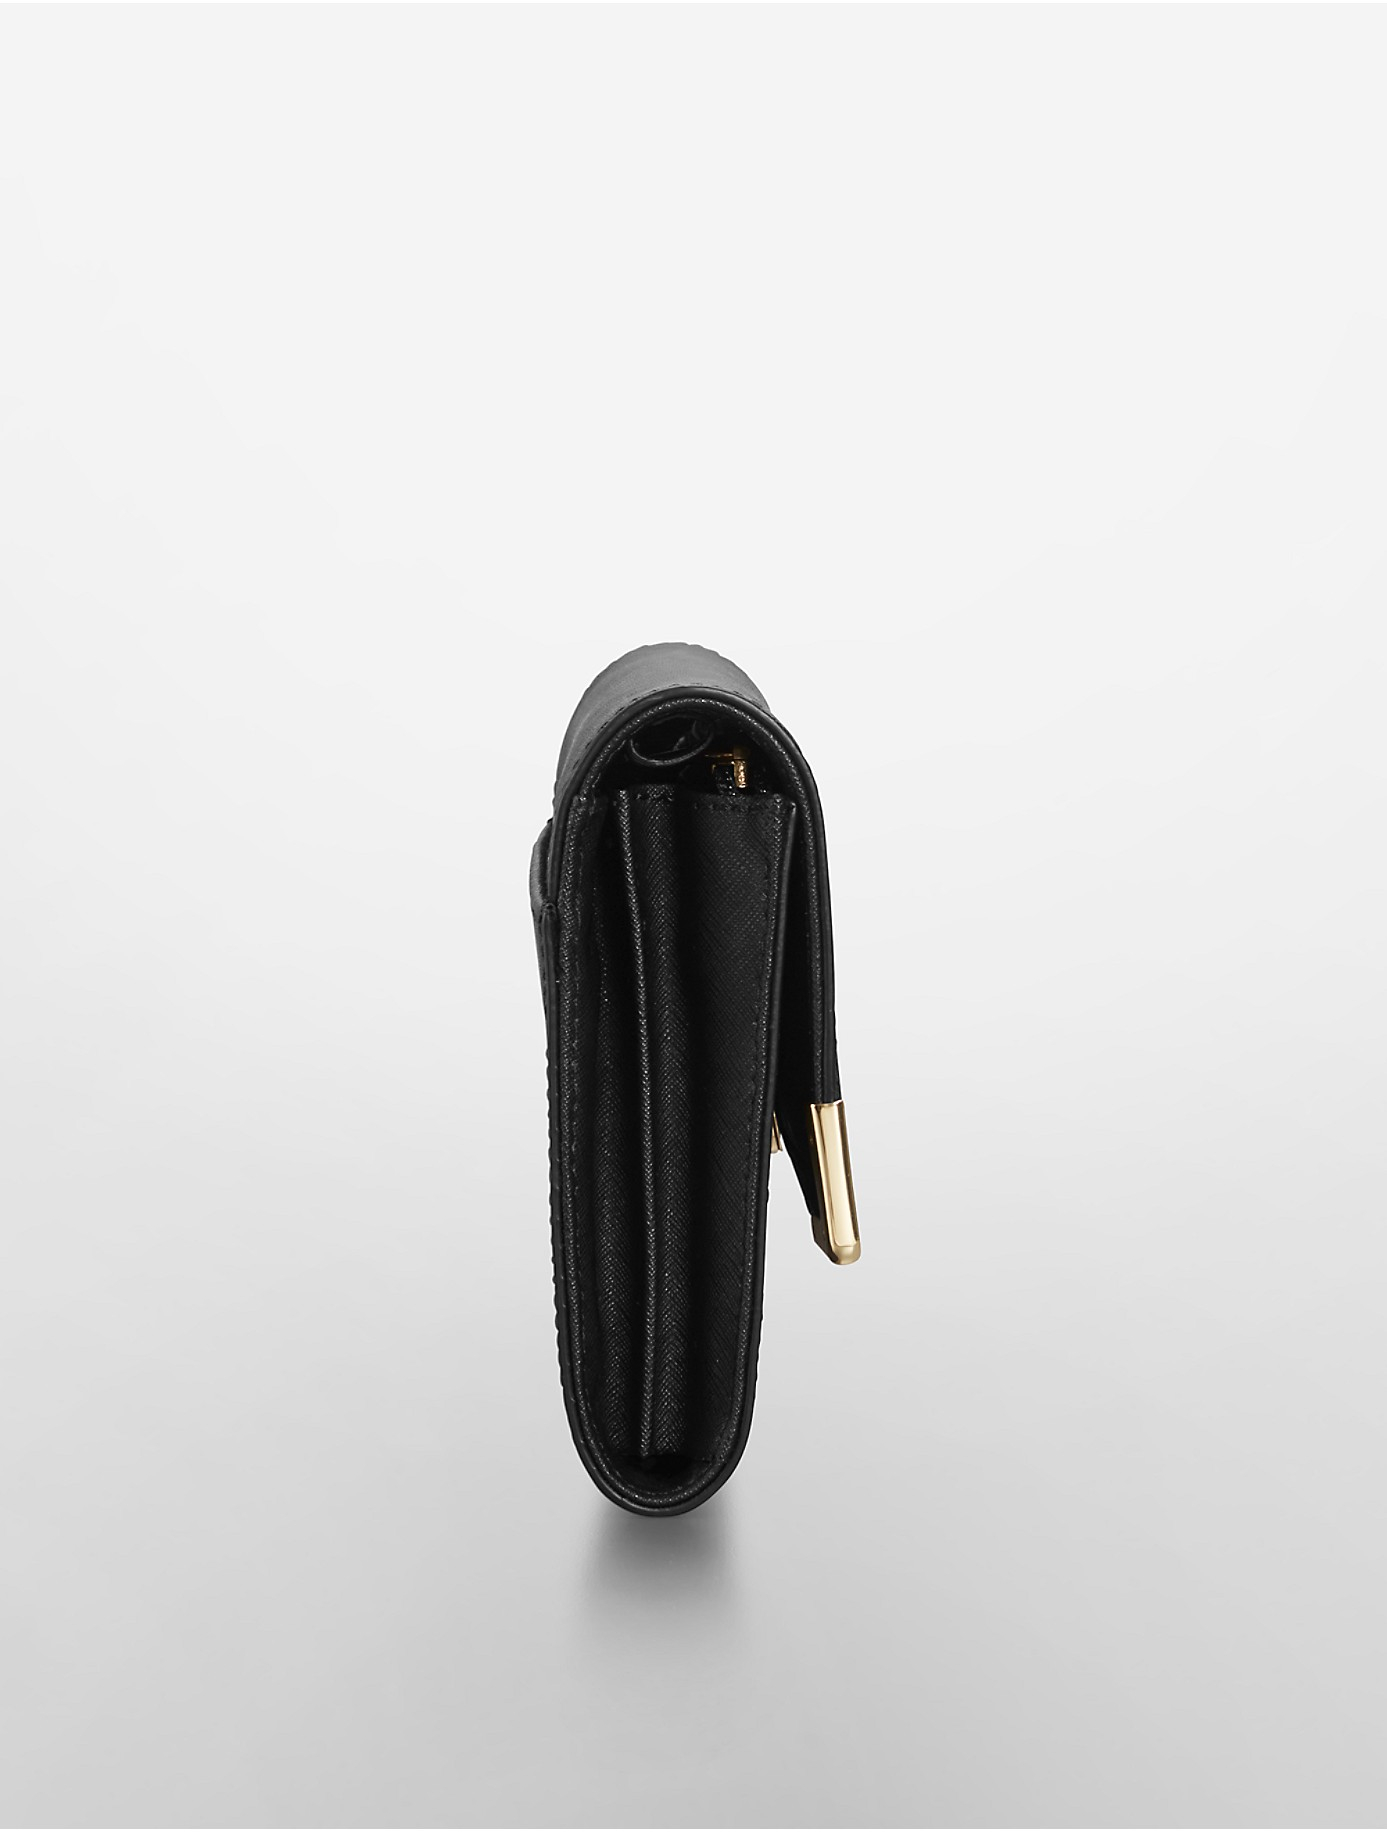 Plaats Vormen Meer Calvin Klein Saffiano Leather Crossbody Bag in Black | Lyst